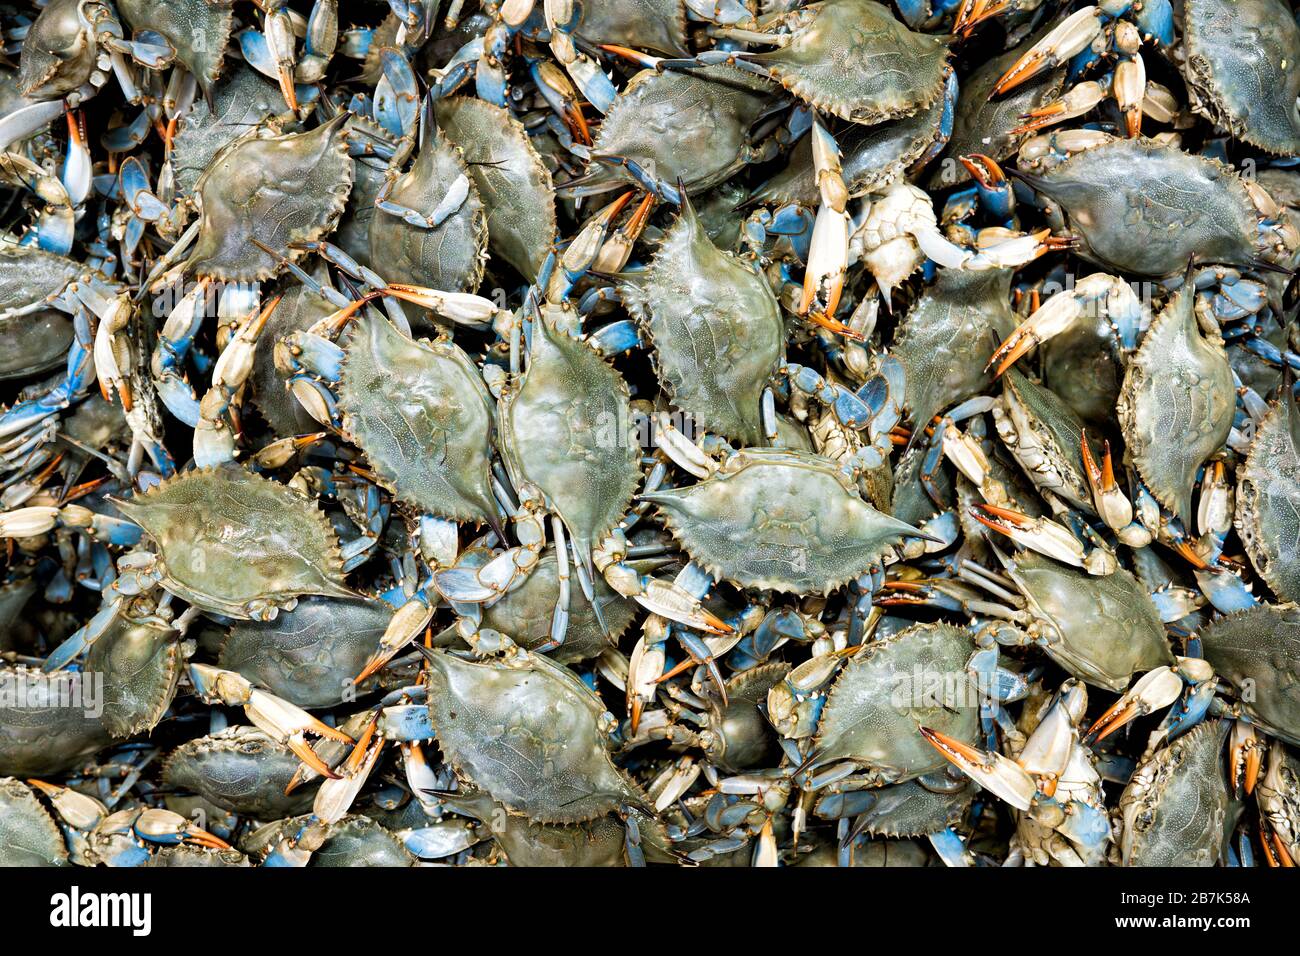 Chesapeake Bay, MD - Blue Crabs (Callinectes sapidus) sind eine lokale Spezialität und Delikatesse der mittelatlantischen Region der Vereinigten Staaten, insbesondere der Chesapeake Bay Area. Stockfoto